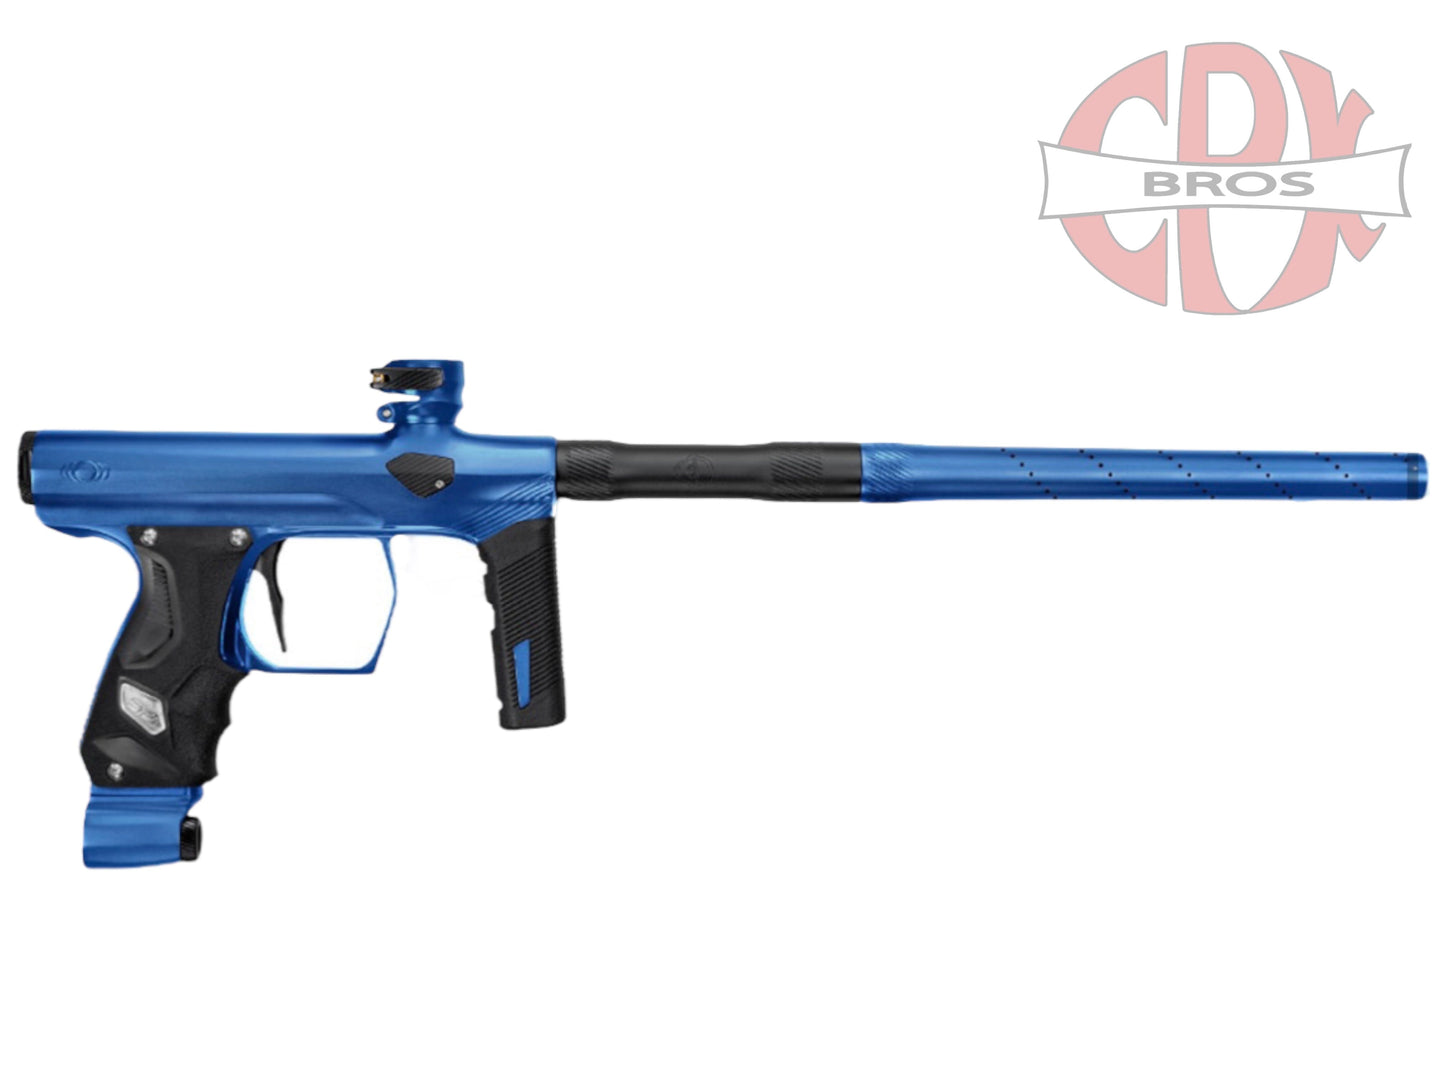 Used NEW SP Shocker ERA Paintball Gun - Matte Blue Paintball Gun from CPXBrosPaintball Buy/Sell/Trade Paintball Markers, Paintball Hoppers, Paintball Masks, and Hormesis Headbands